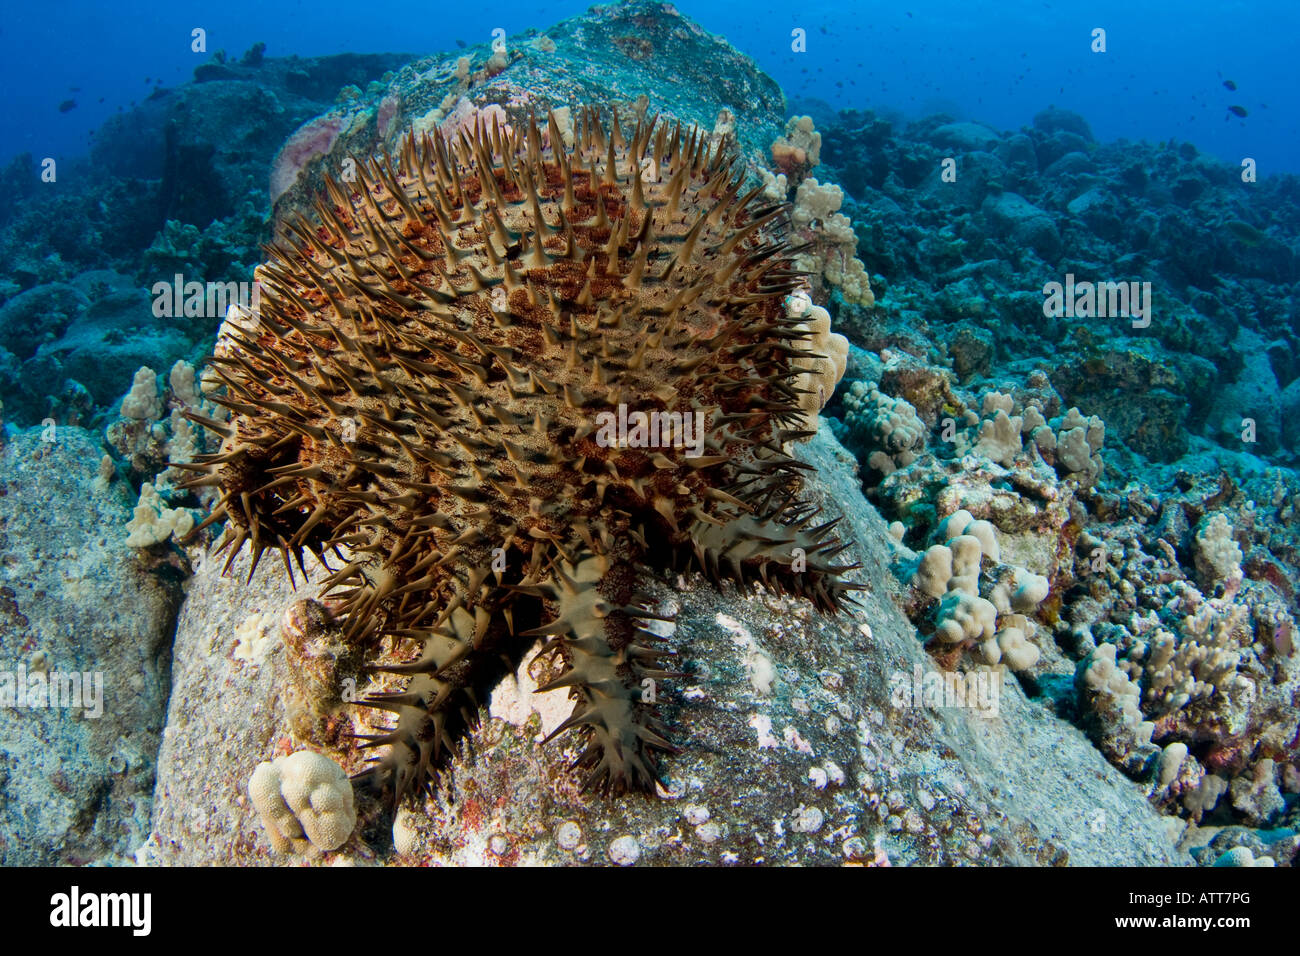 L'étoile de mer Acanthaster planci,, se nourrit de coraux vivants et est couverte d'épines très pointues, à Hawaï. Banque D'Images